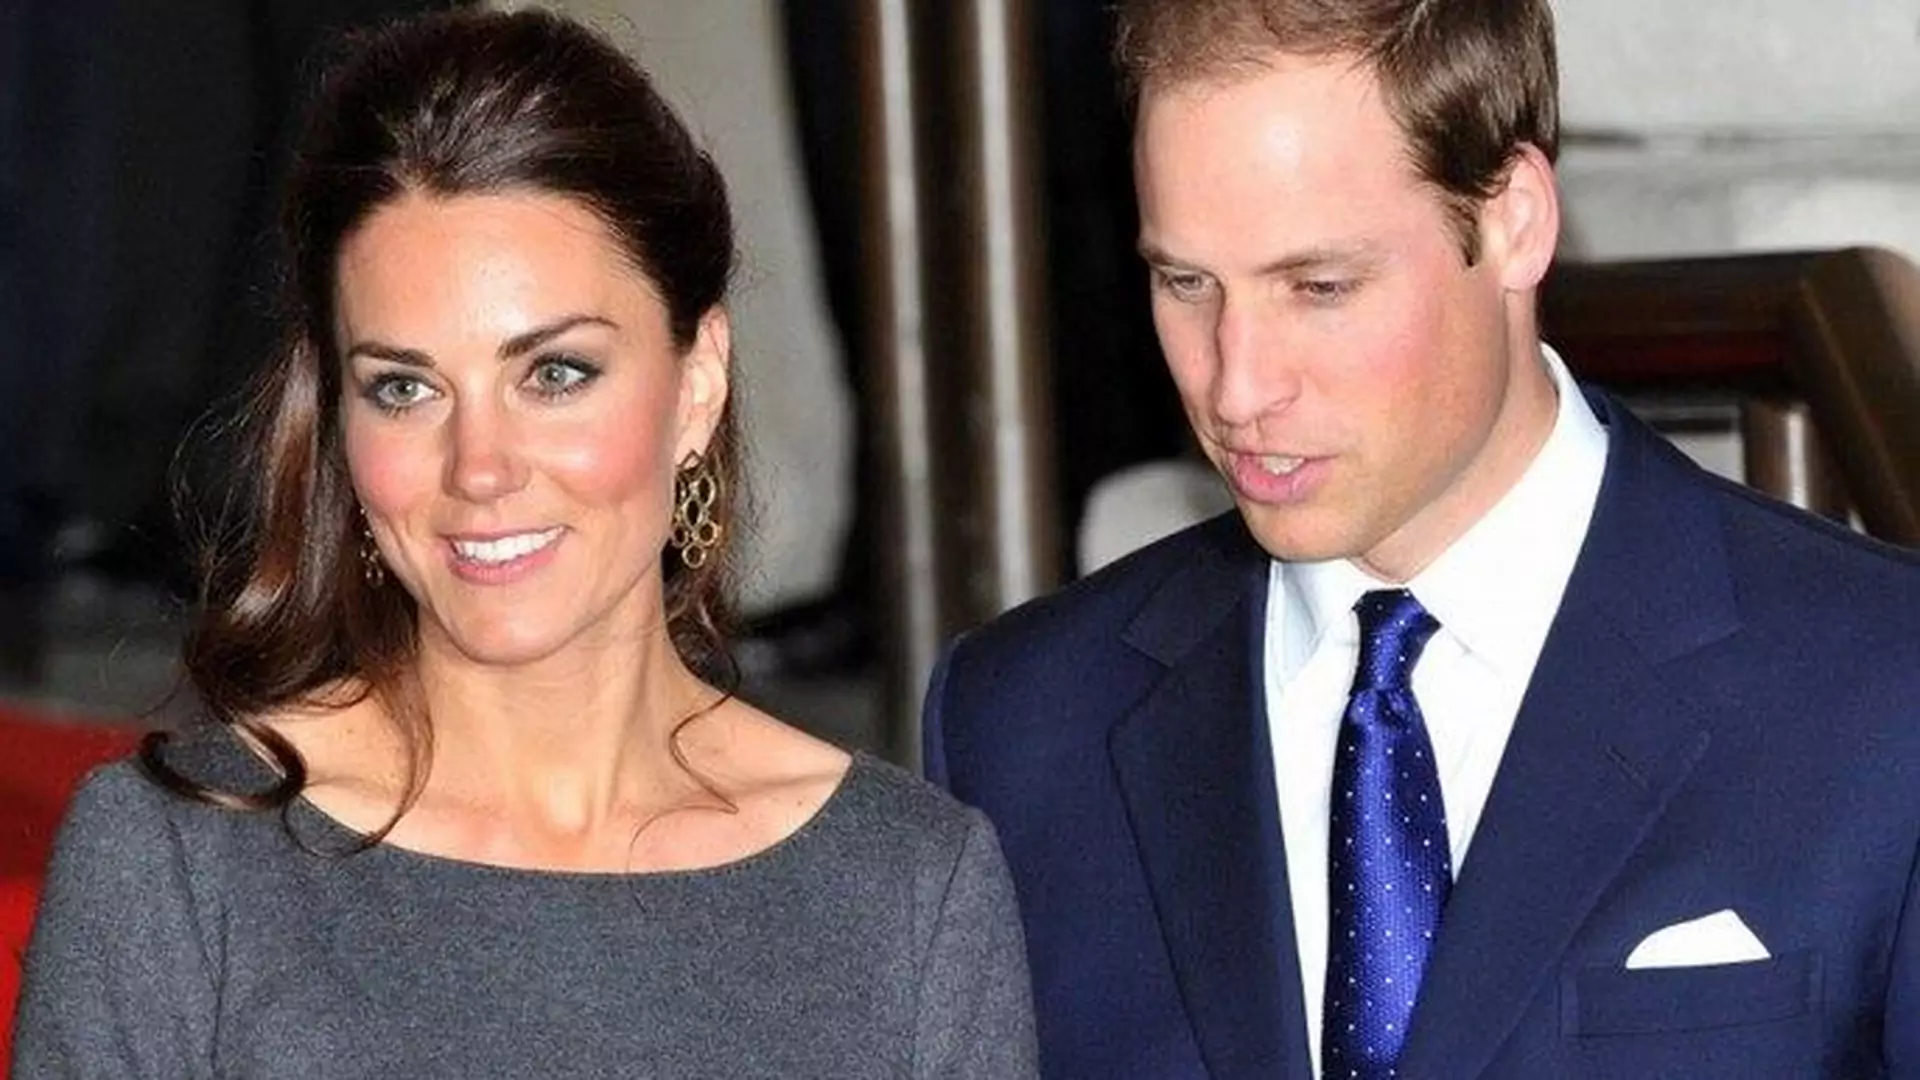 Jakie imię otrzyma dziecko Kate Middleton i Williama?